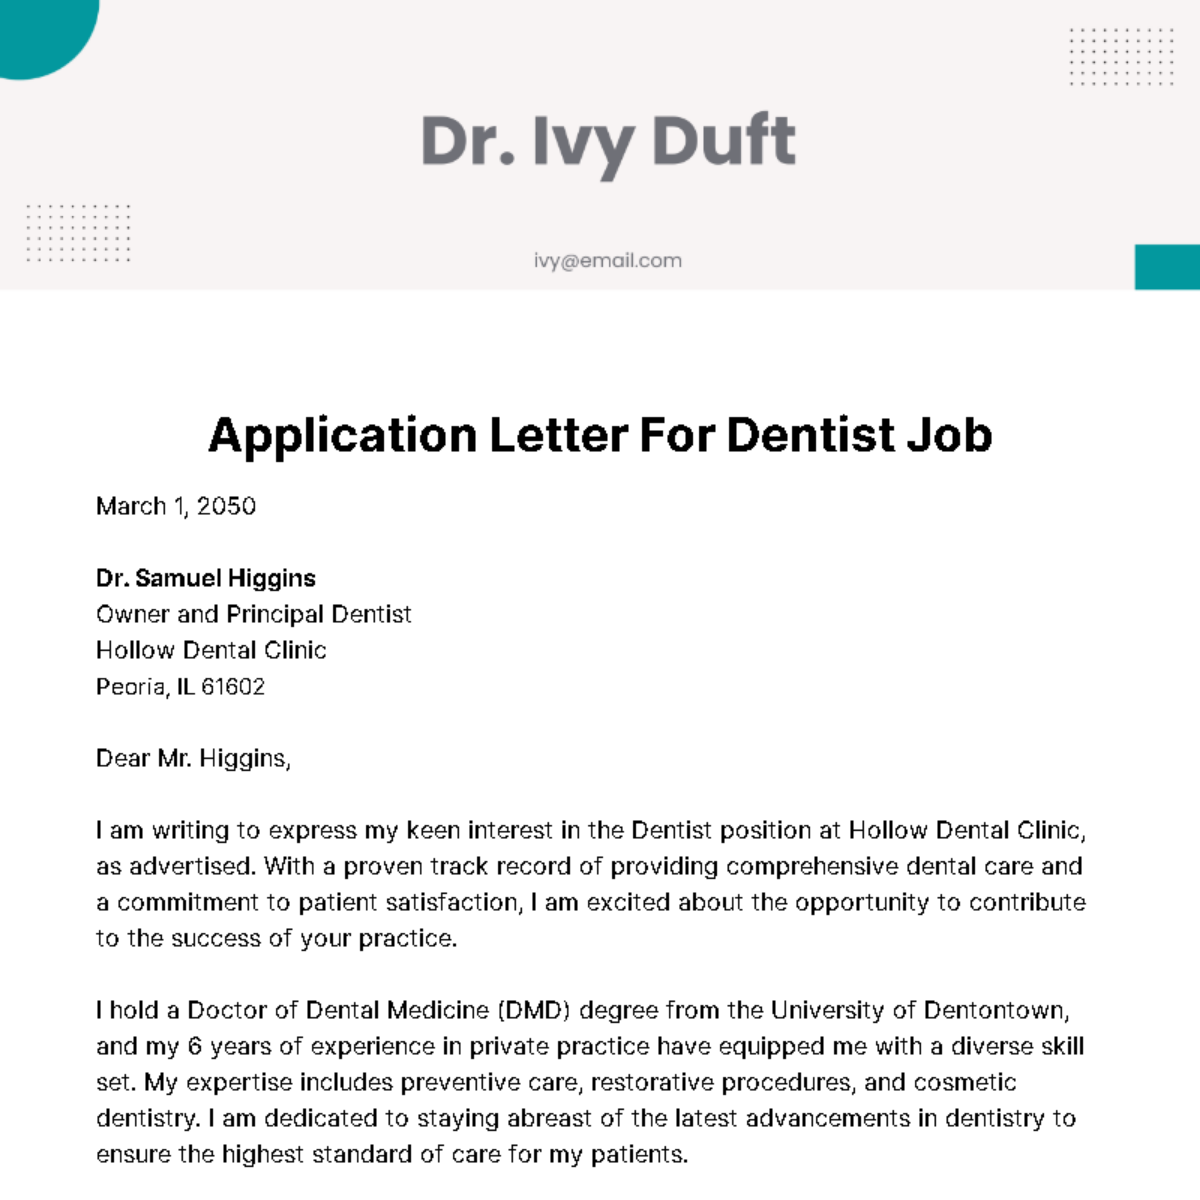 Application Letter for Dentist Job Template